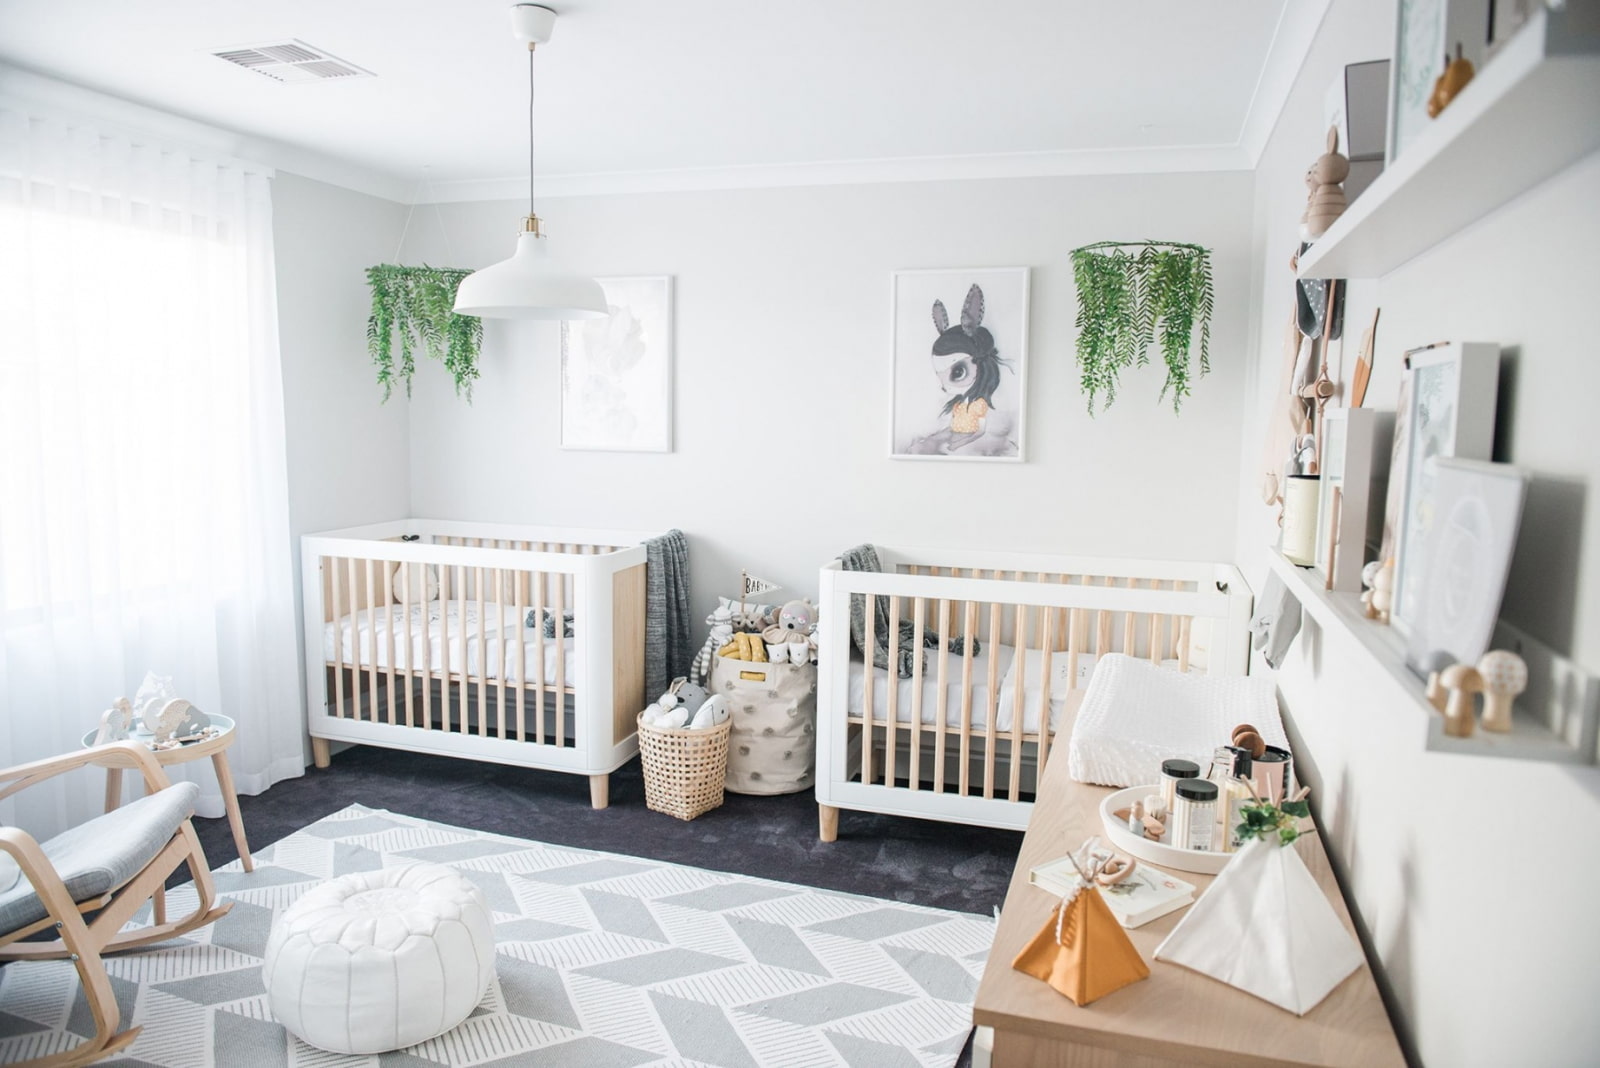 Zimmer für ein Neugeborenes: die Wahl eines Kinderbetts, Möglichkeiten der Anordnung, Foto